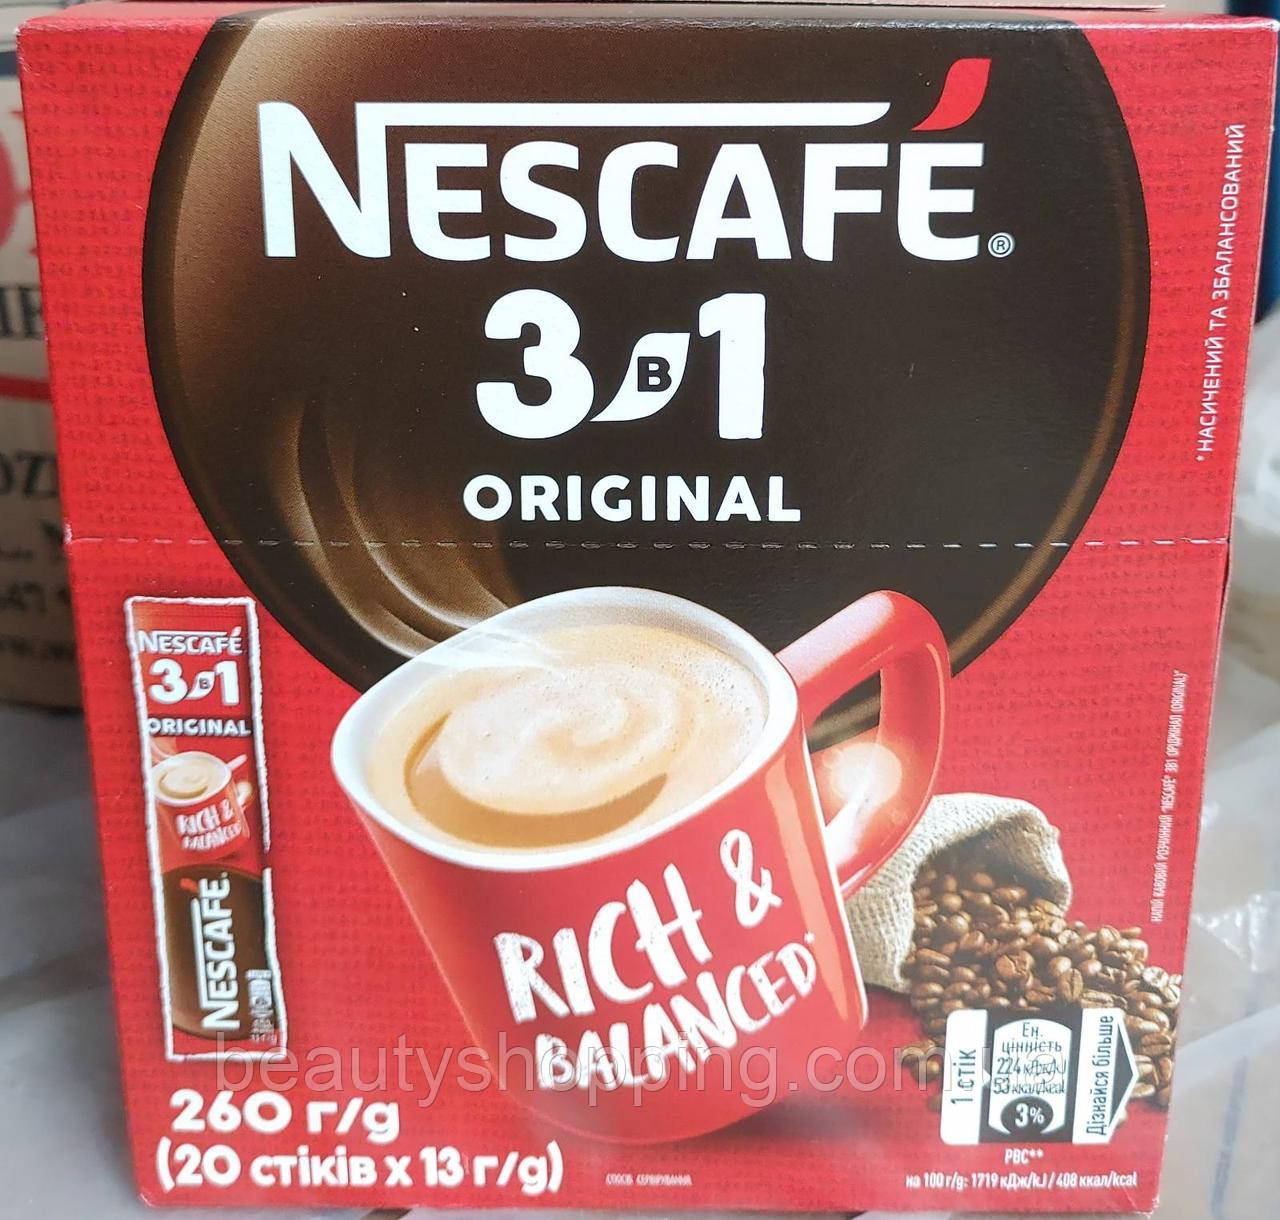 Nescafe Original Нескафе Оригінал 3в1 кавовий напій 20 стіків 13g